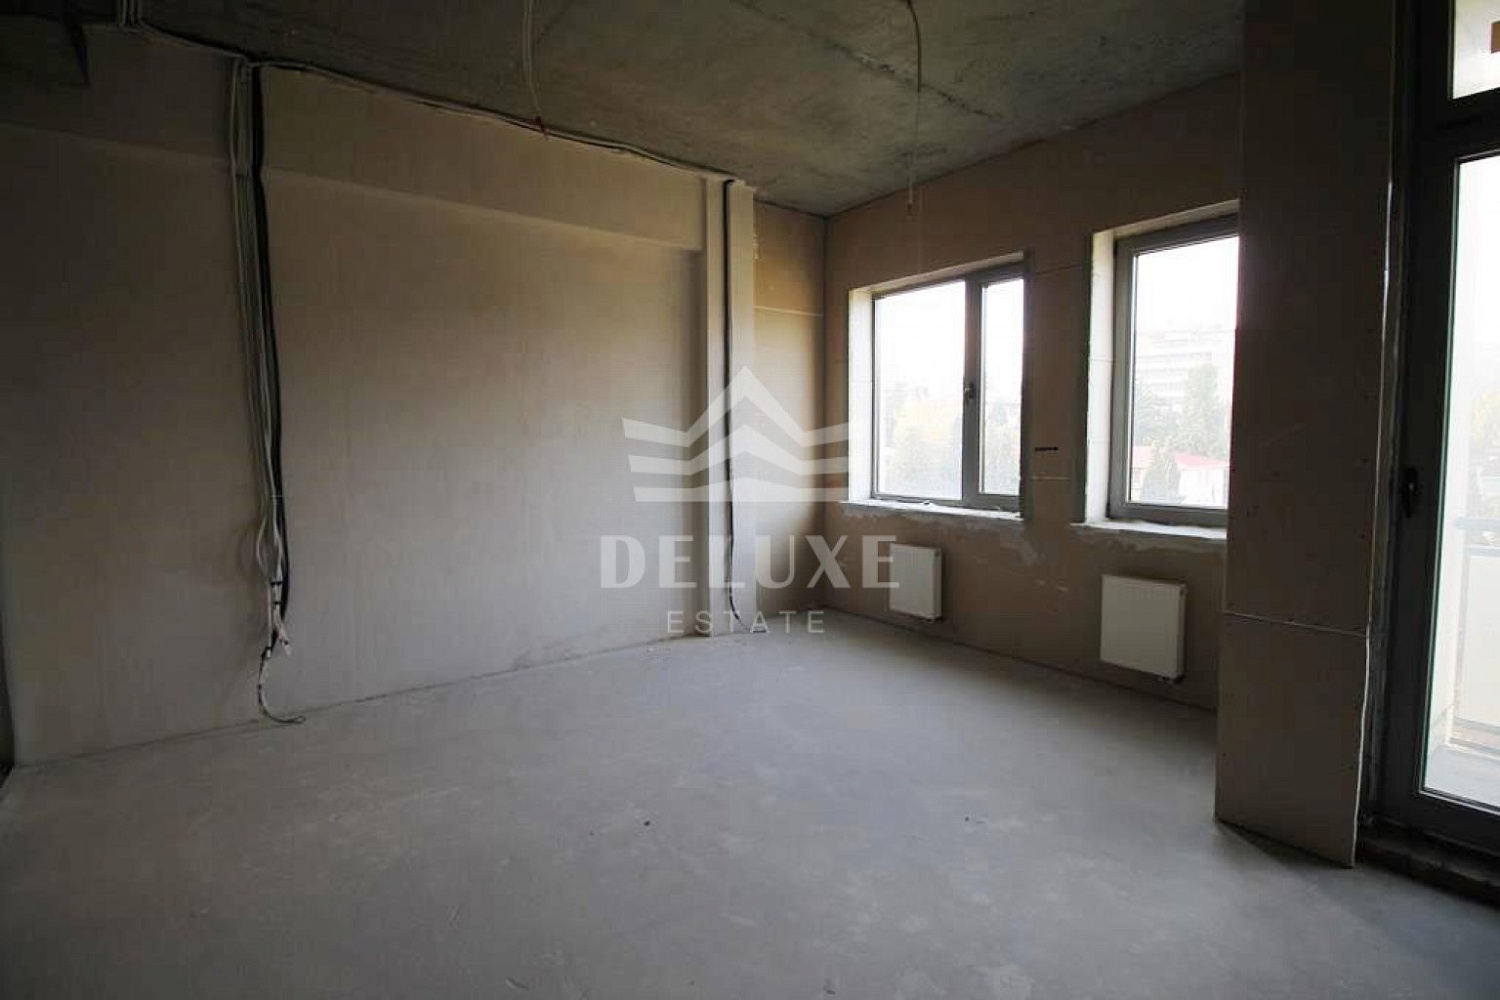 3-комнатная квартира под отделку в Клубном доме Дача Доктора Штейнгольца